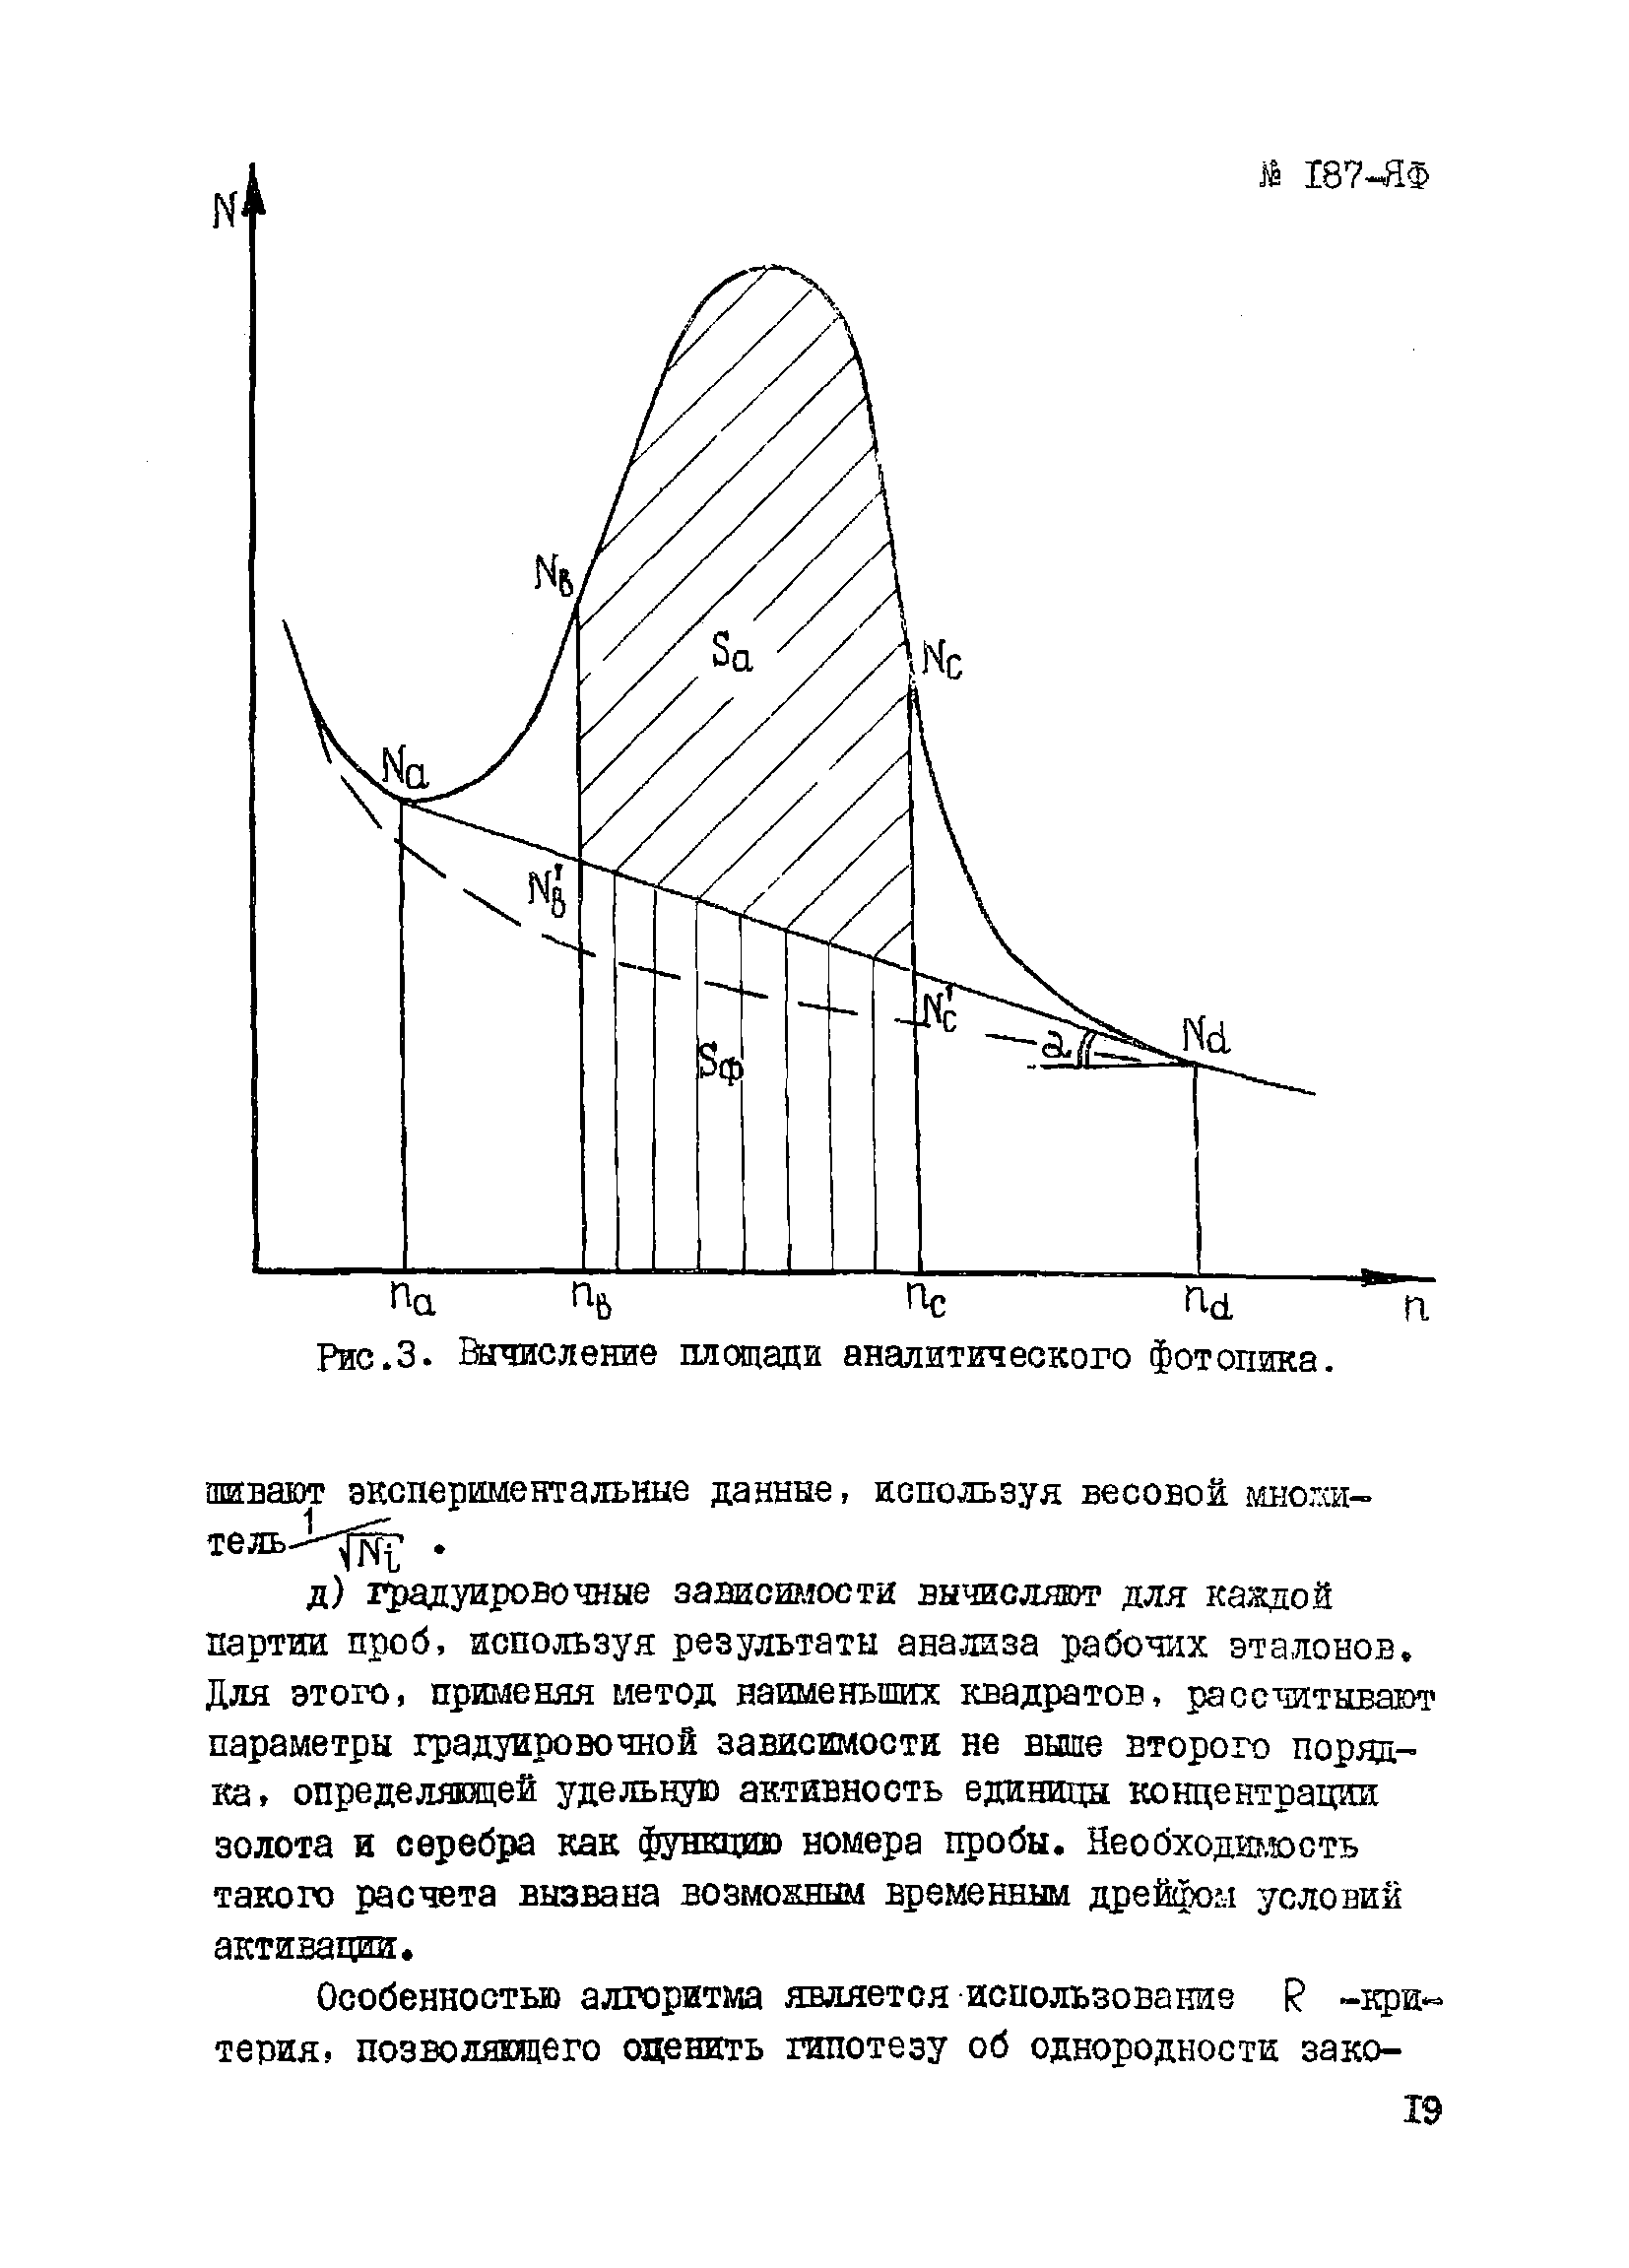 Инструкция НСАМ 187-ЯФ